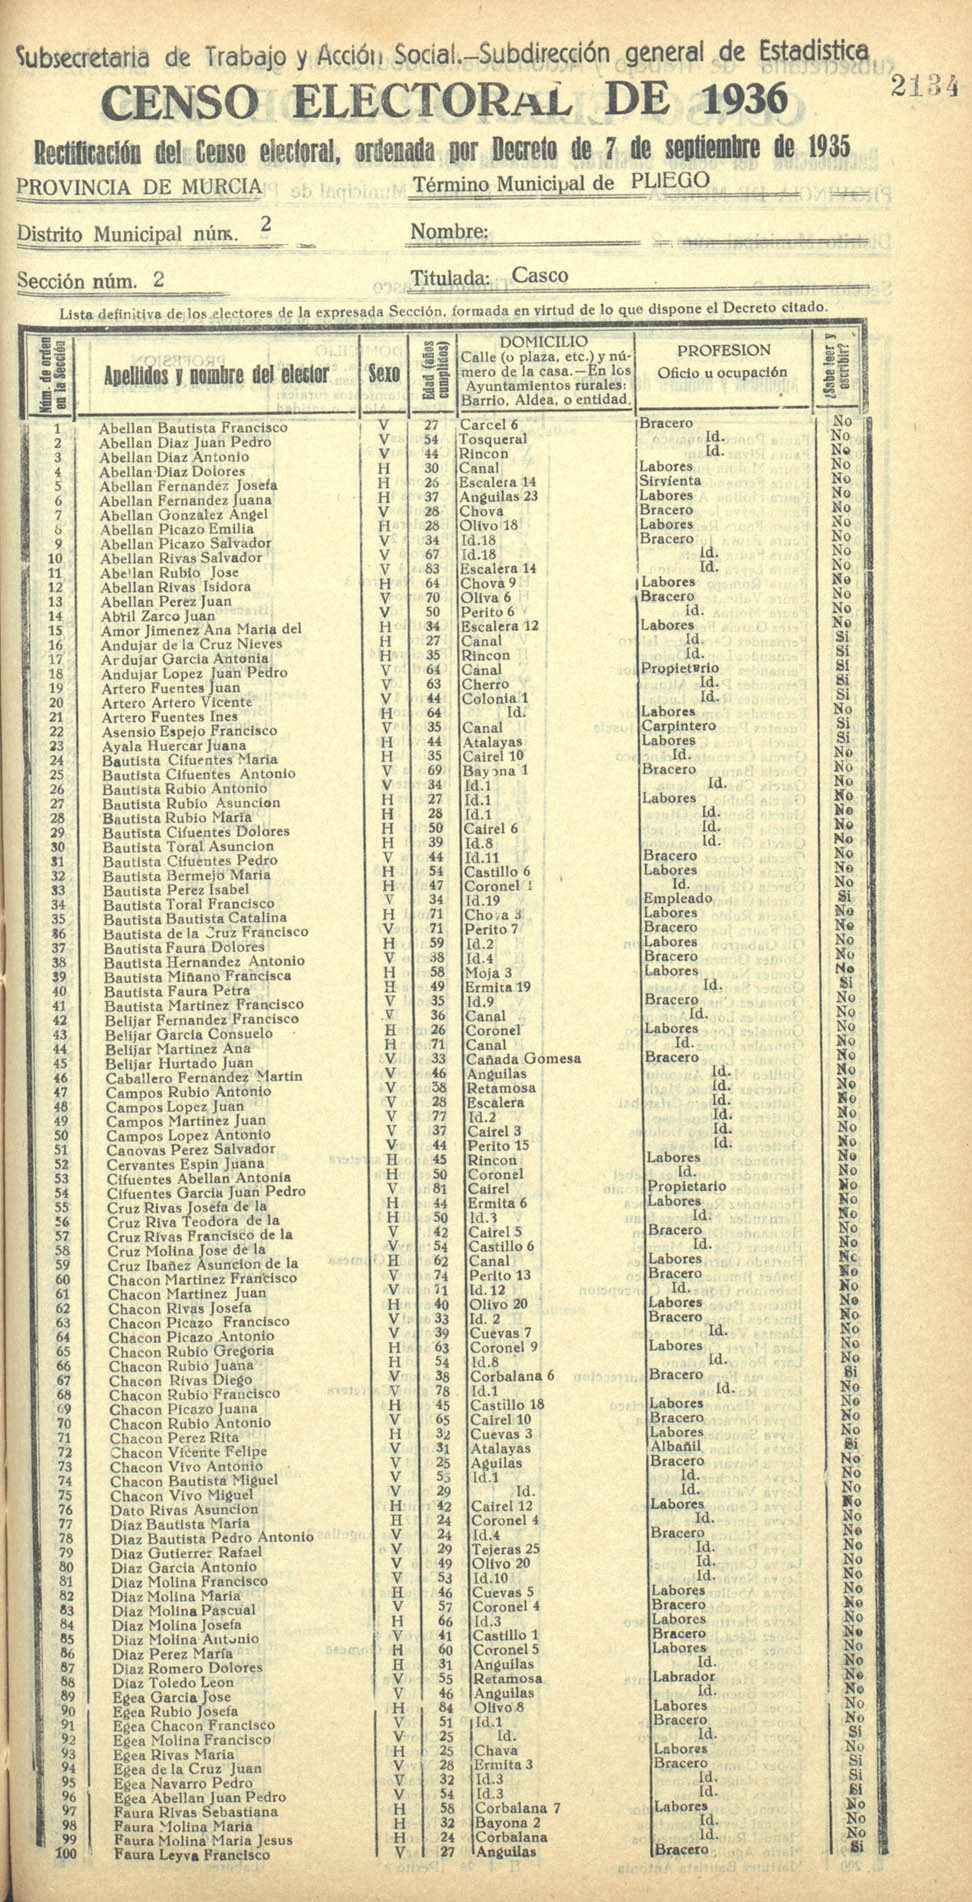 Censo electoral provincial de 1936. Pliego. Distrito 2ª. Sección 1ª, Cinto